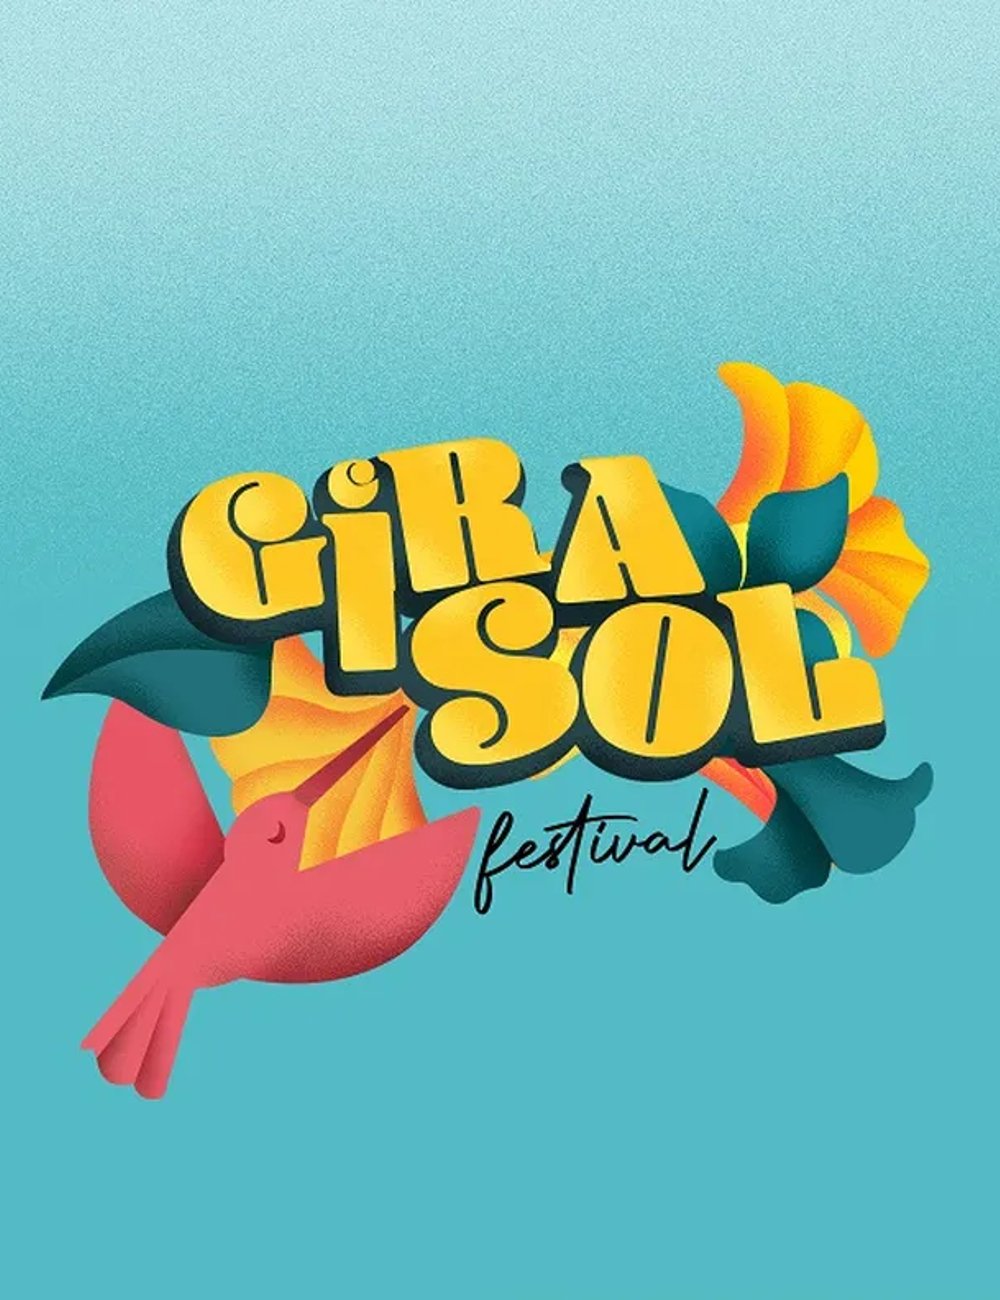 GiraSol - música - festivais de música - verão - Teresina - https://stealthelook.com.br